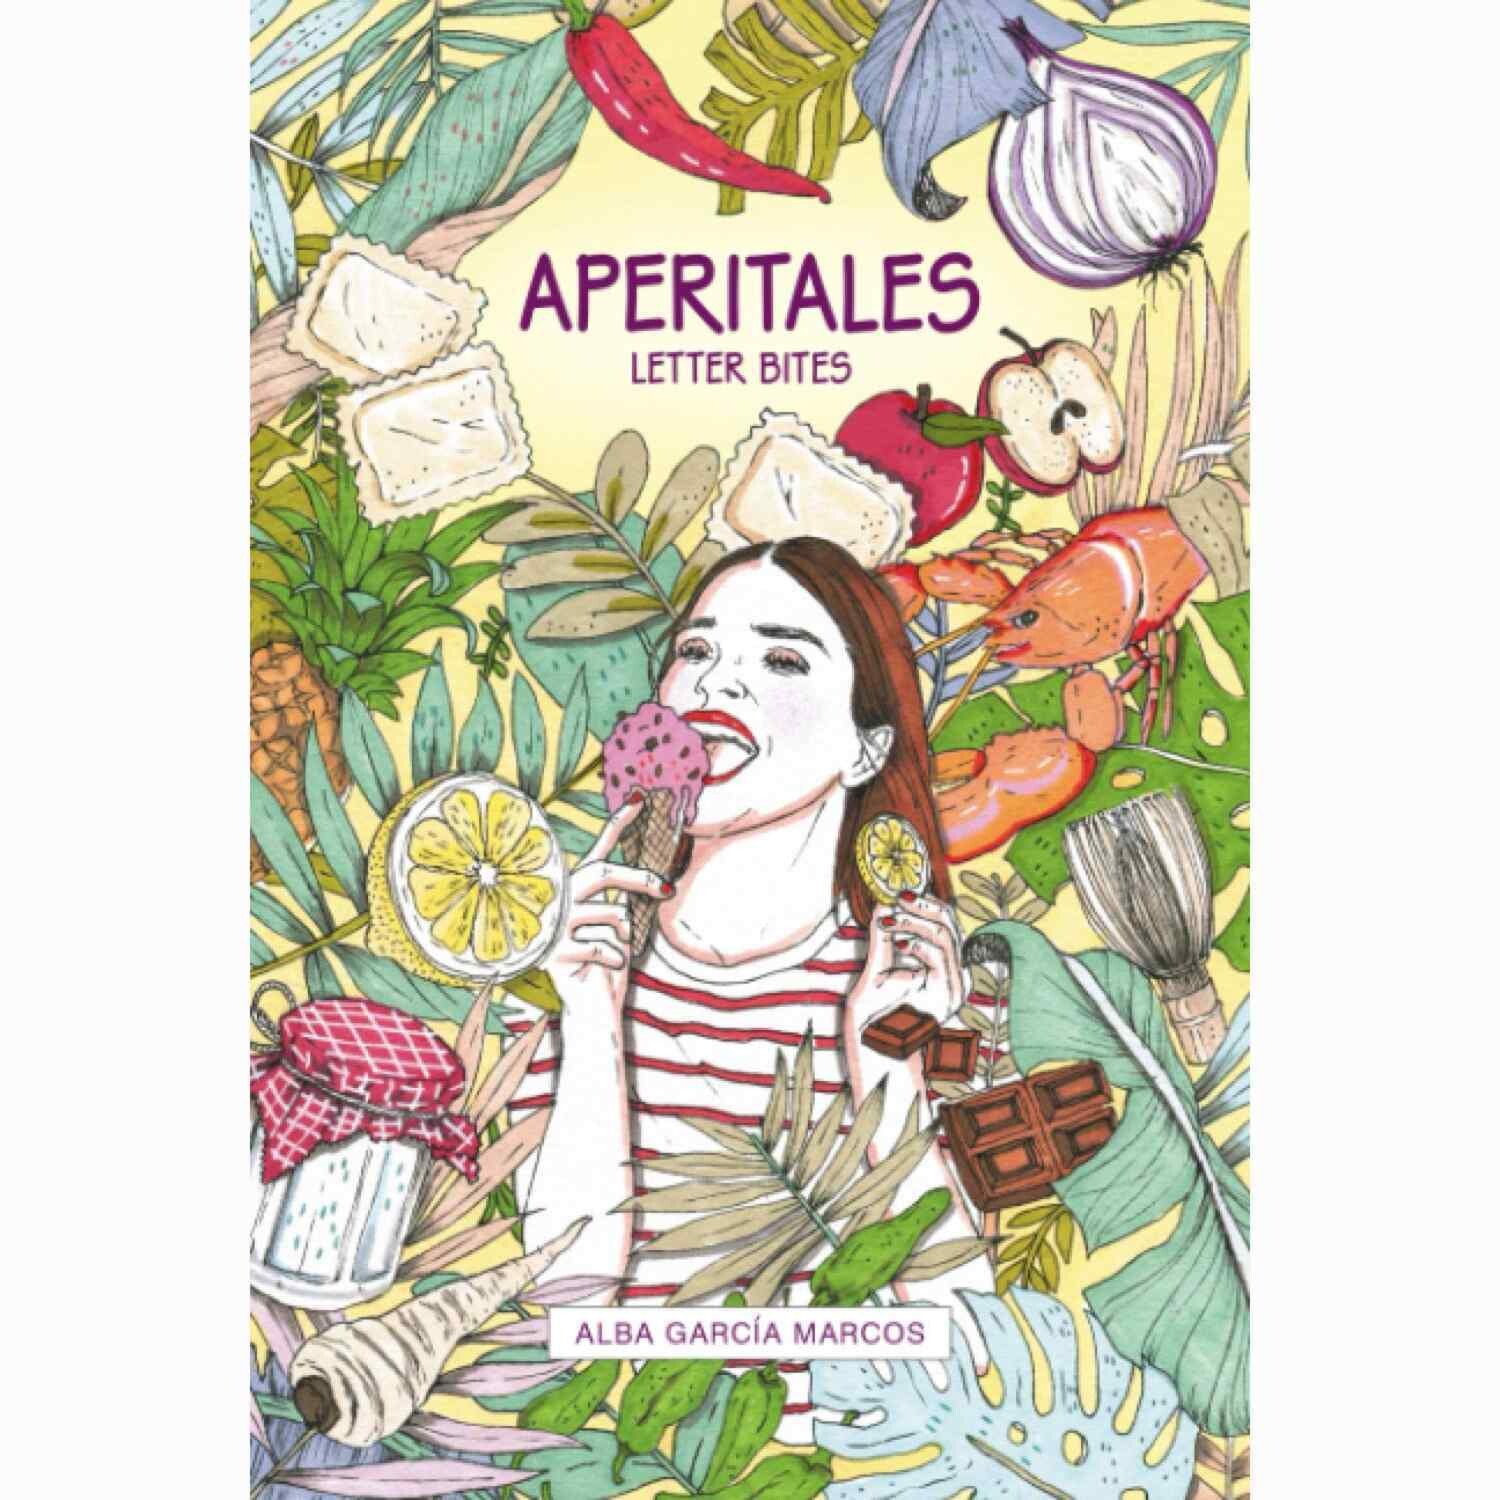 Aperitales by Alba Garcia Marcos